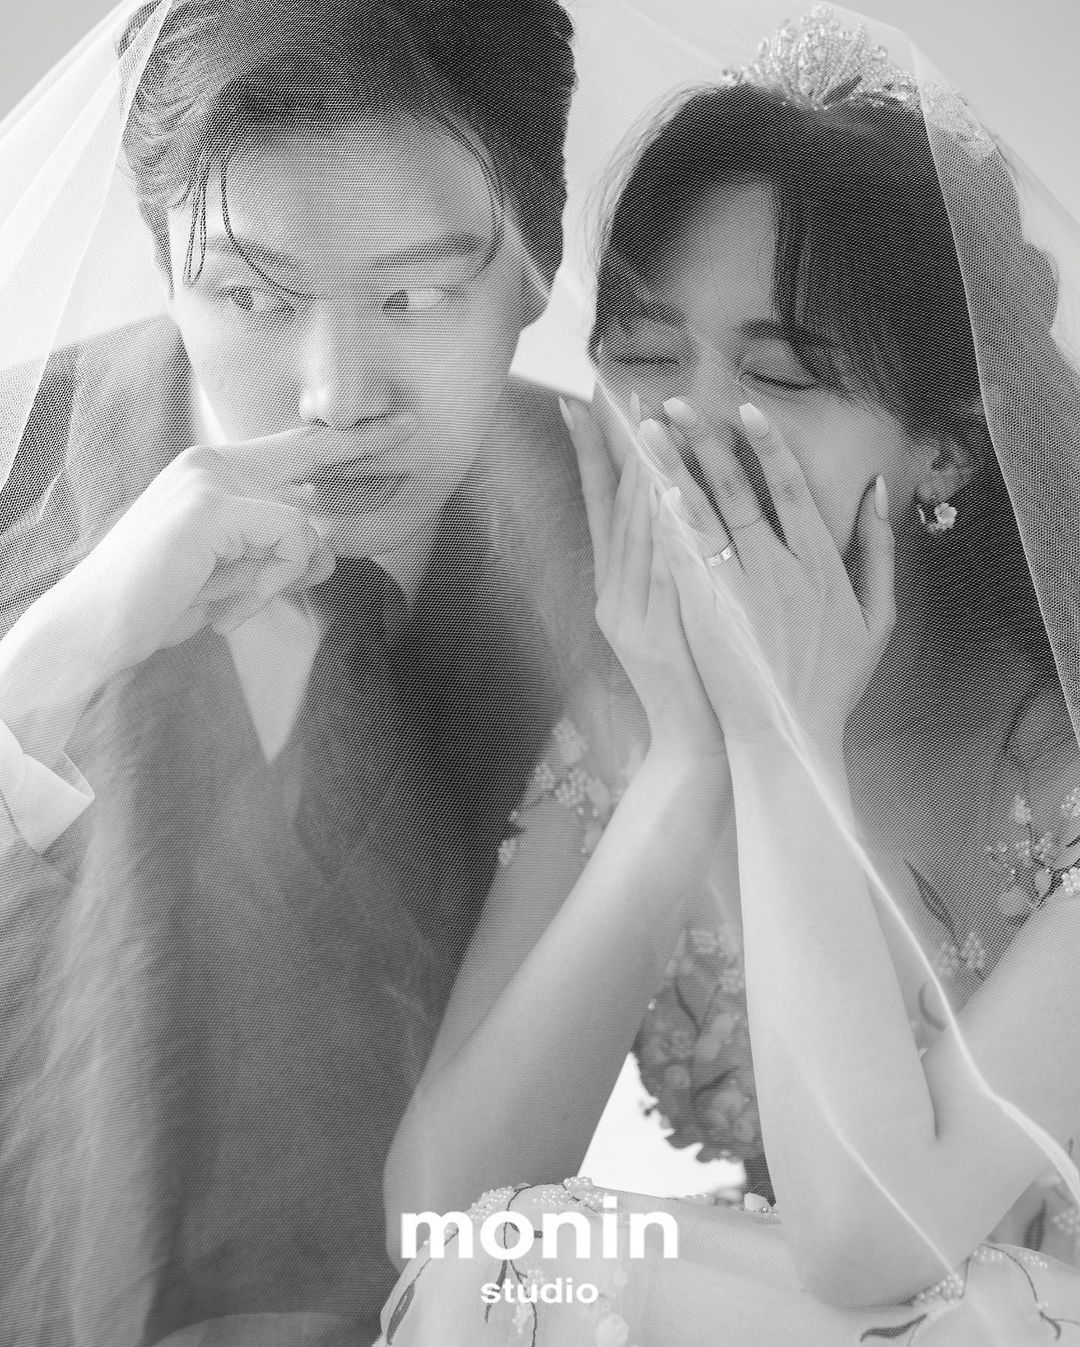 Showbiz Hàn được mùa cưới: Sau Hyun Bin và Son Ye Jin, có cặp đôi idol chốt đơn về chung nhà chỉ sau 1 năm hẹn hò - Ảnh 5.